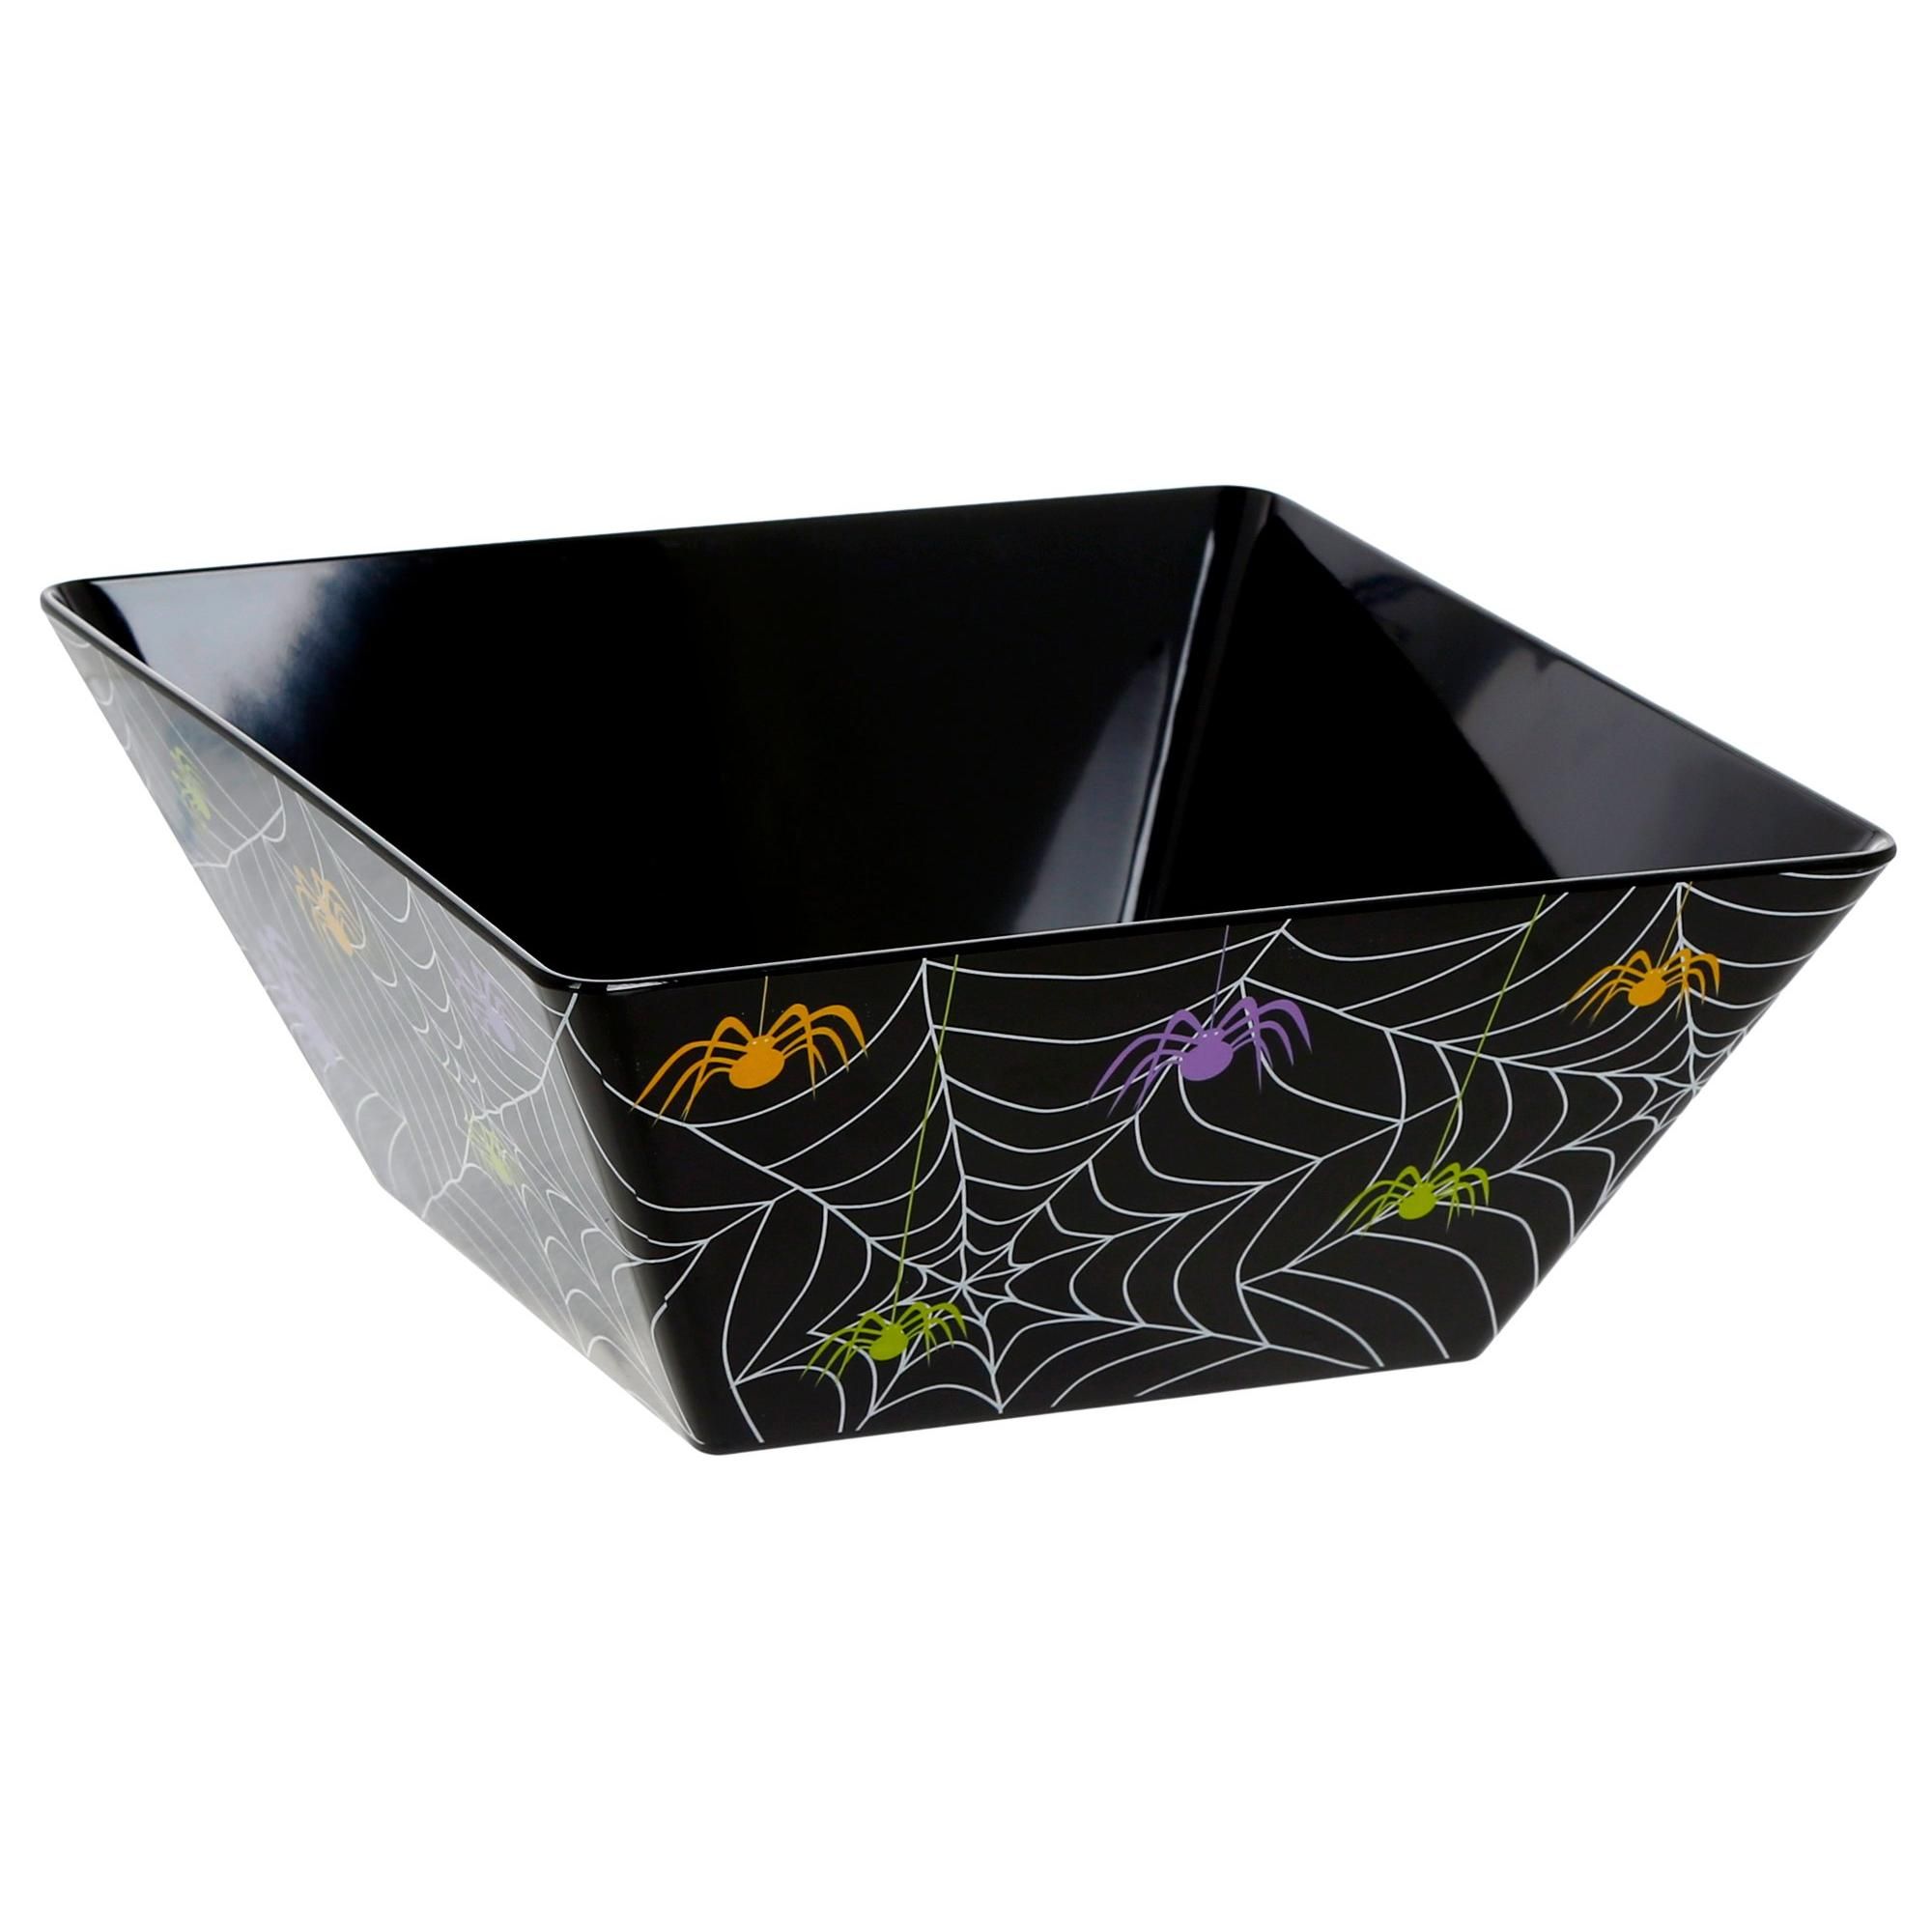 10" Spiderweb Bowl - Black-Black-4230530355201   | Burkes Outlet | bealls